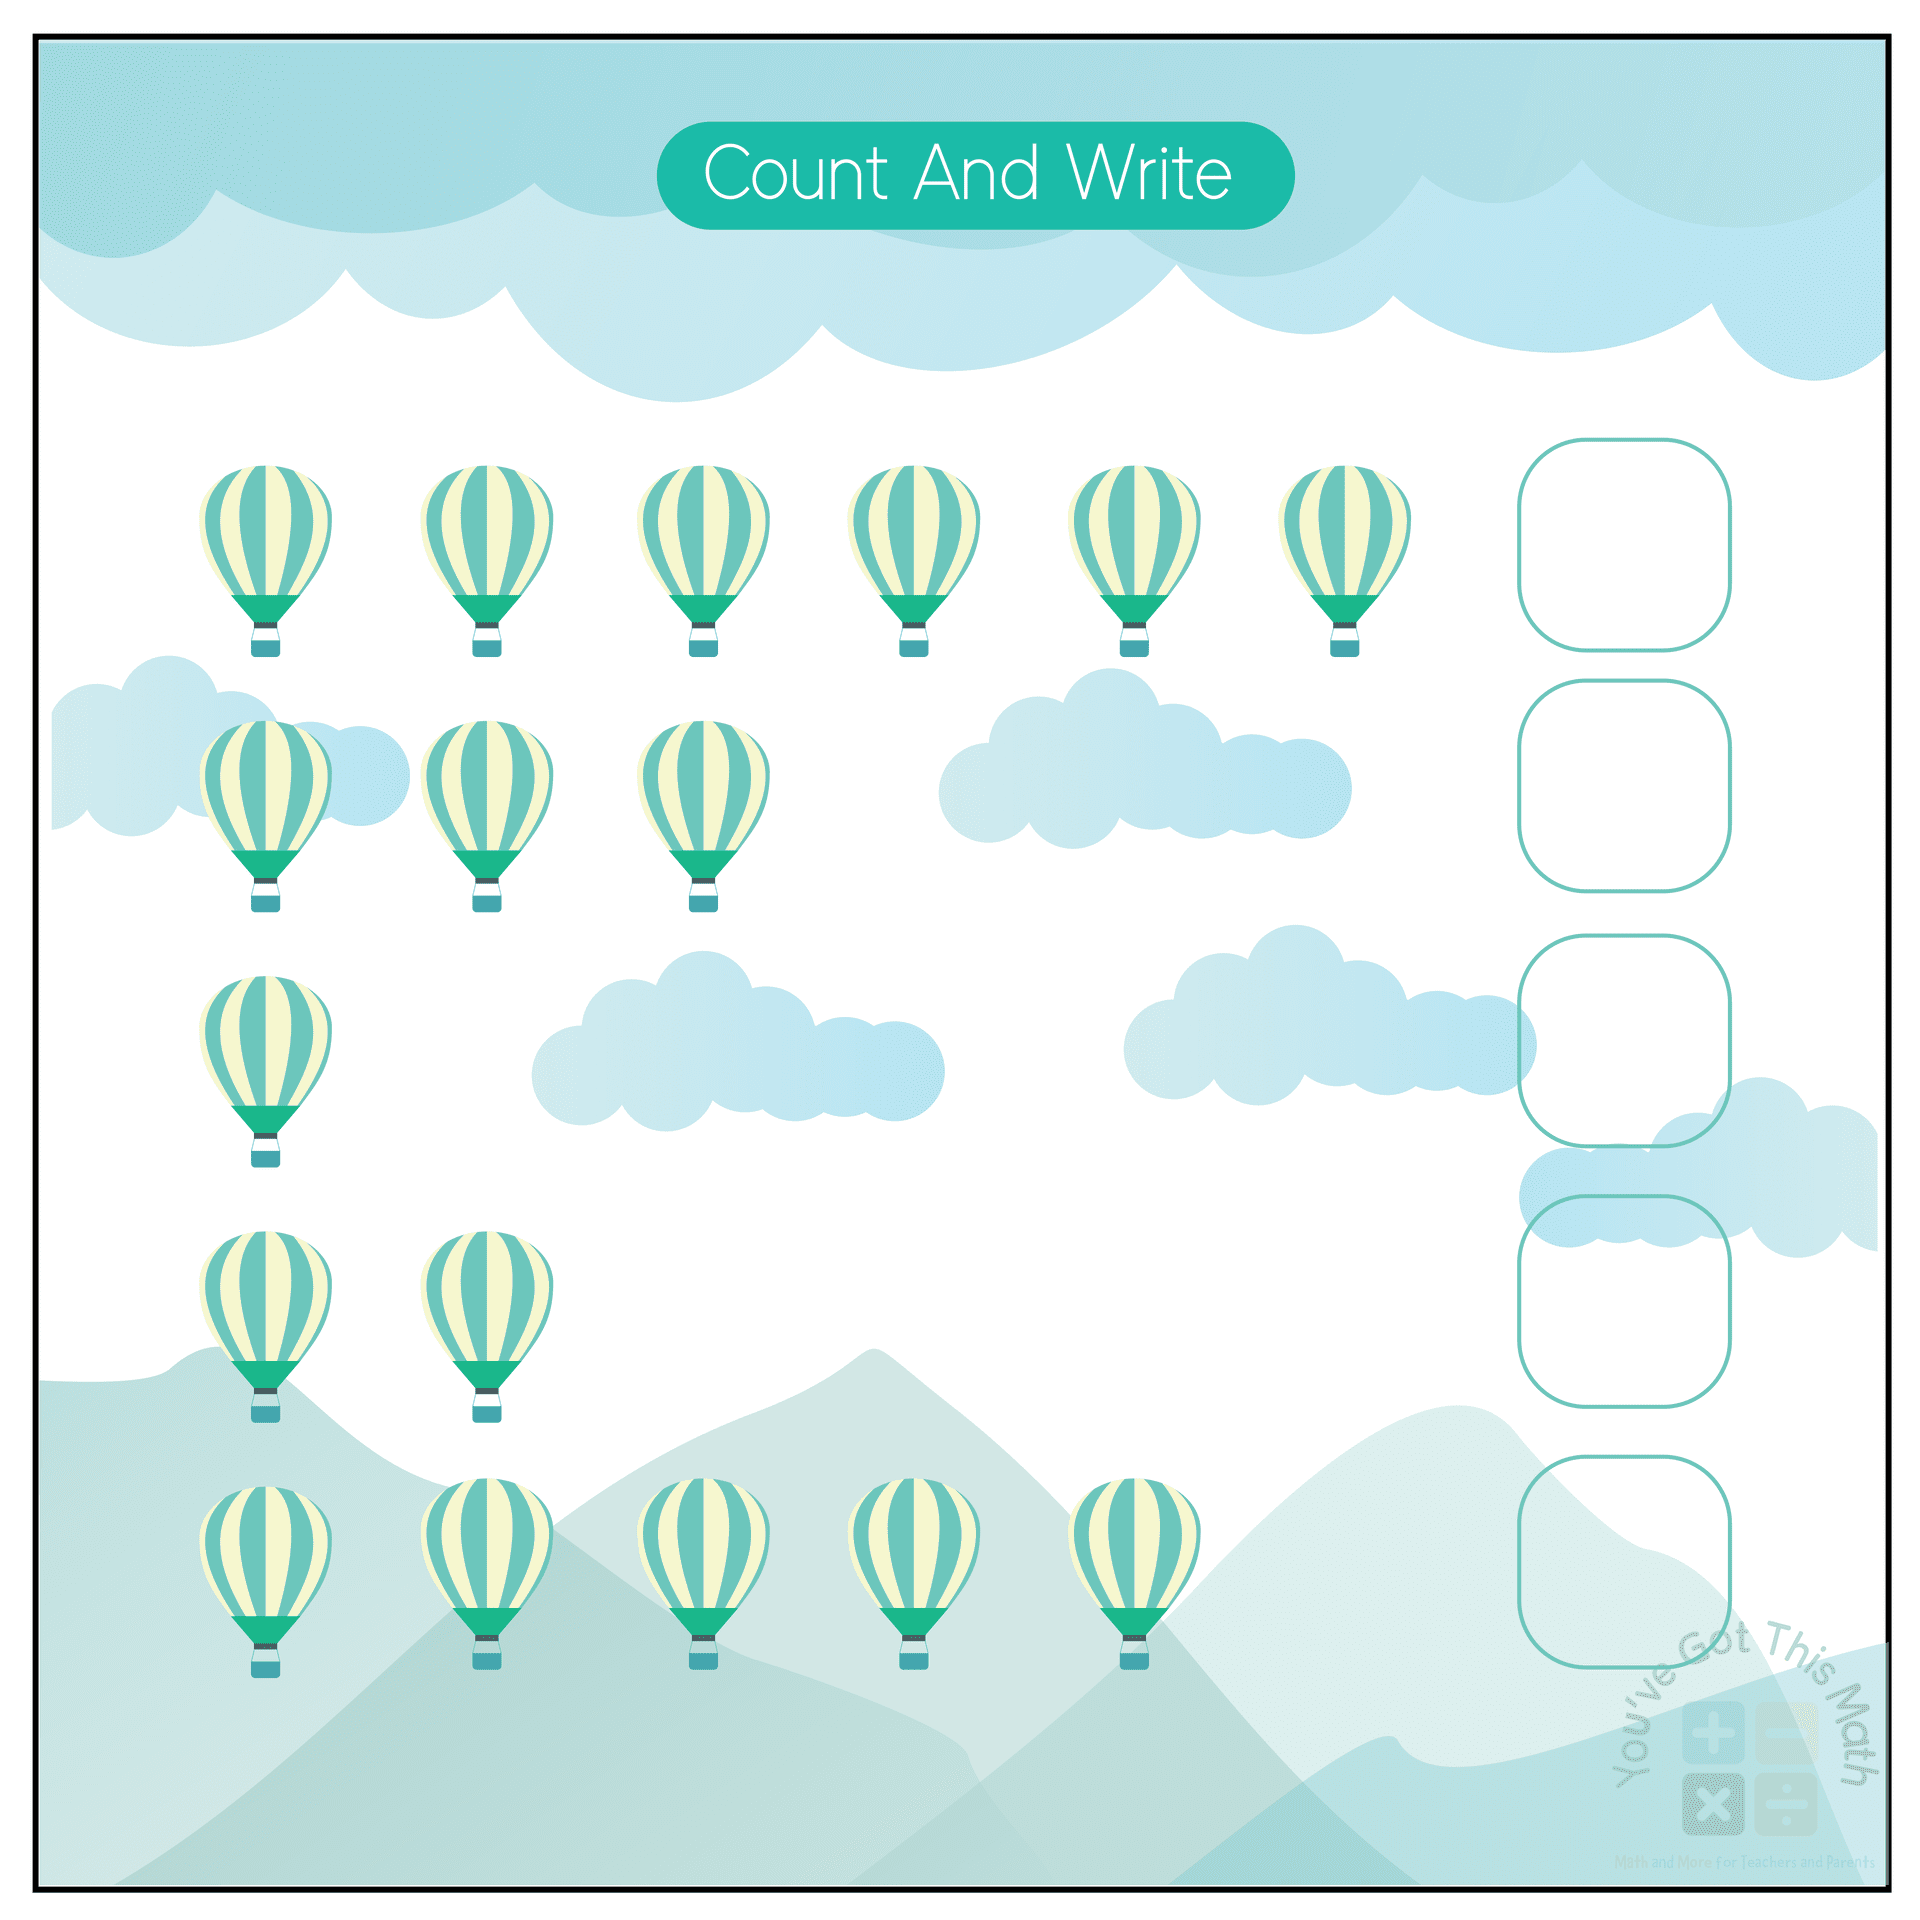 Counting Hot Air Balloons